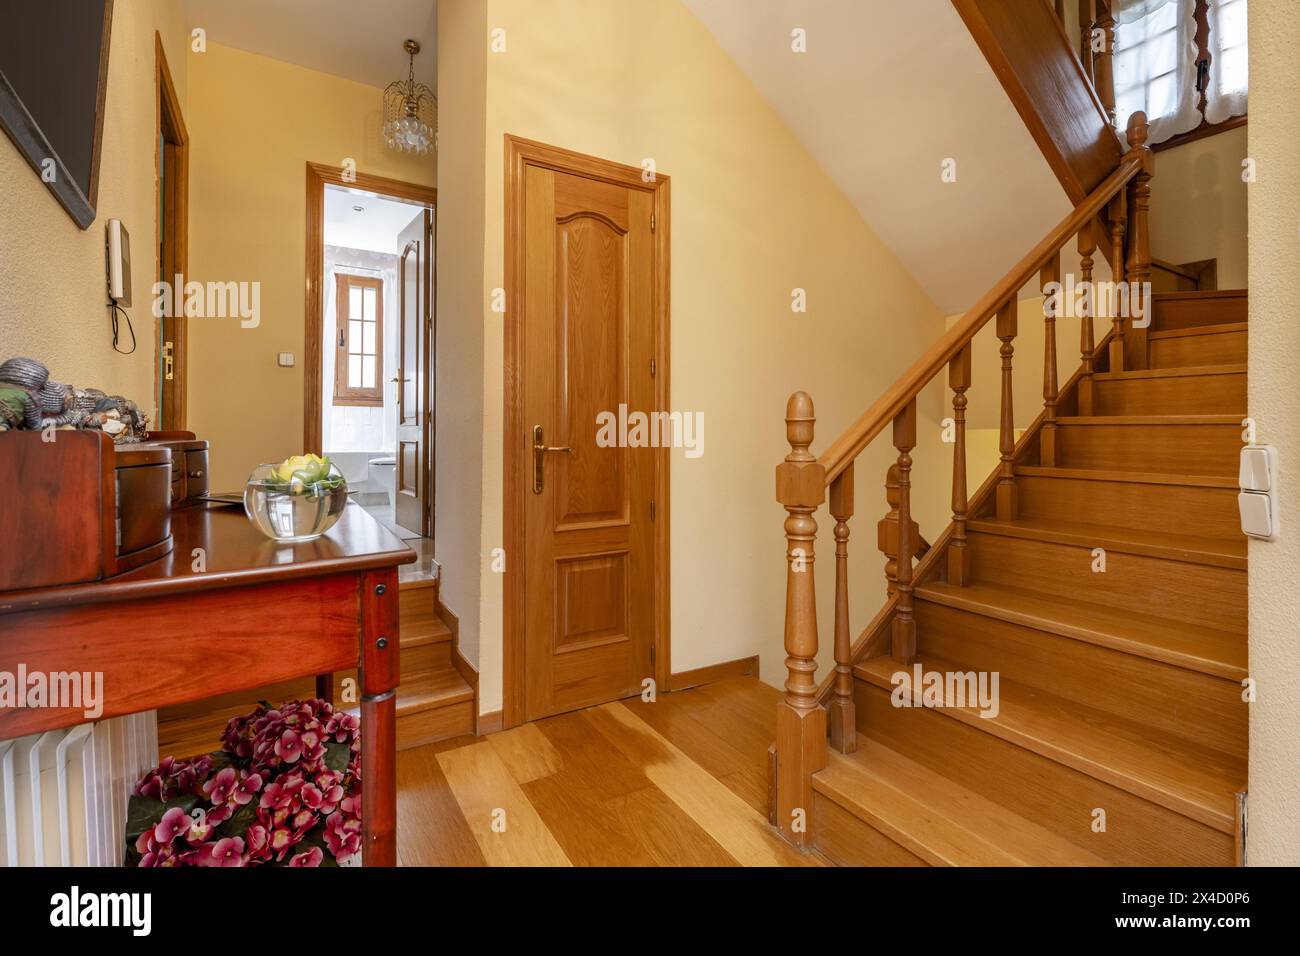 Scala interna di una casa unifamiliare con pianerottolo con una credenza in legno con balaustre in legno di quercia e pavimento dello stesso materiale Foto Stock